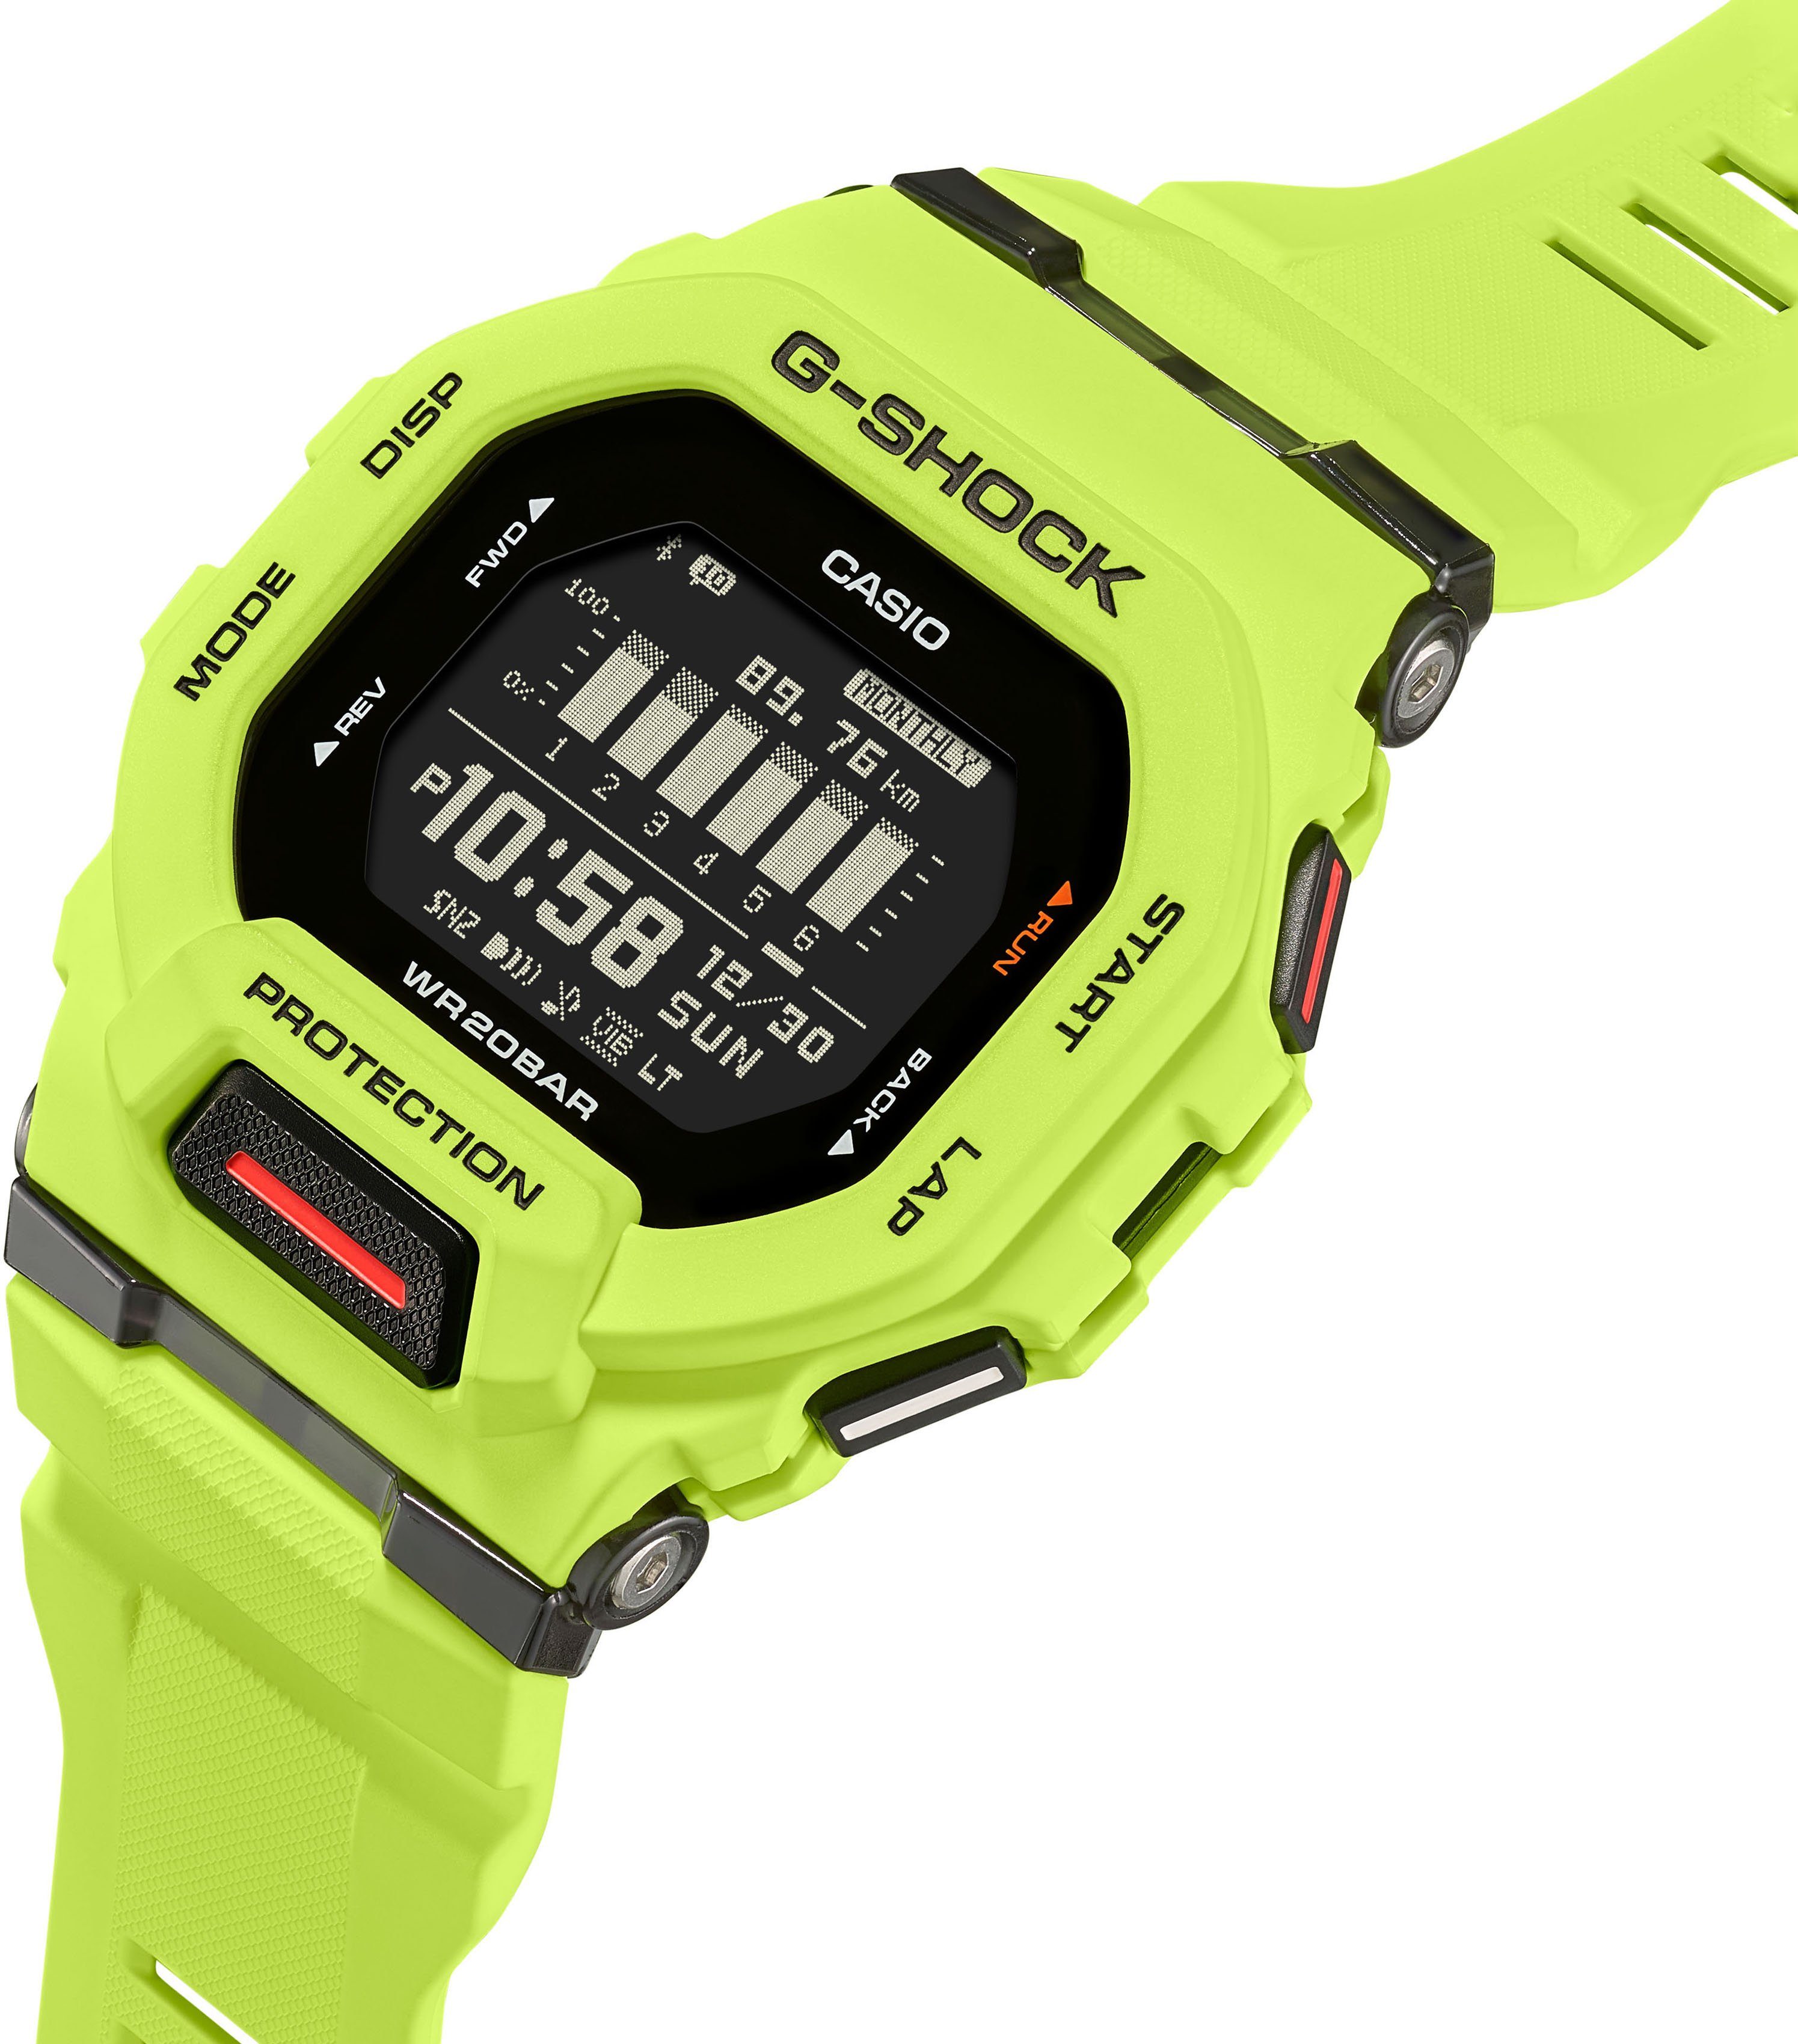 Smartwatch GBD-200-9ER CASIO G-SHOCK